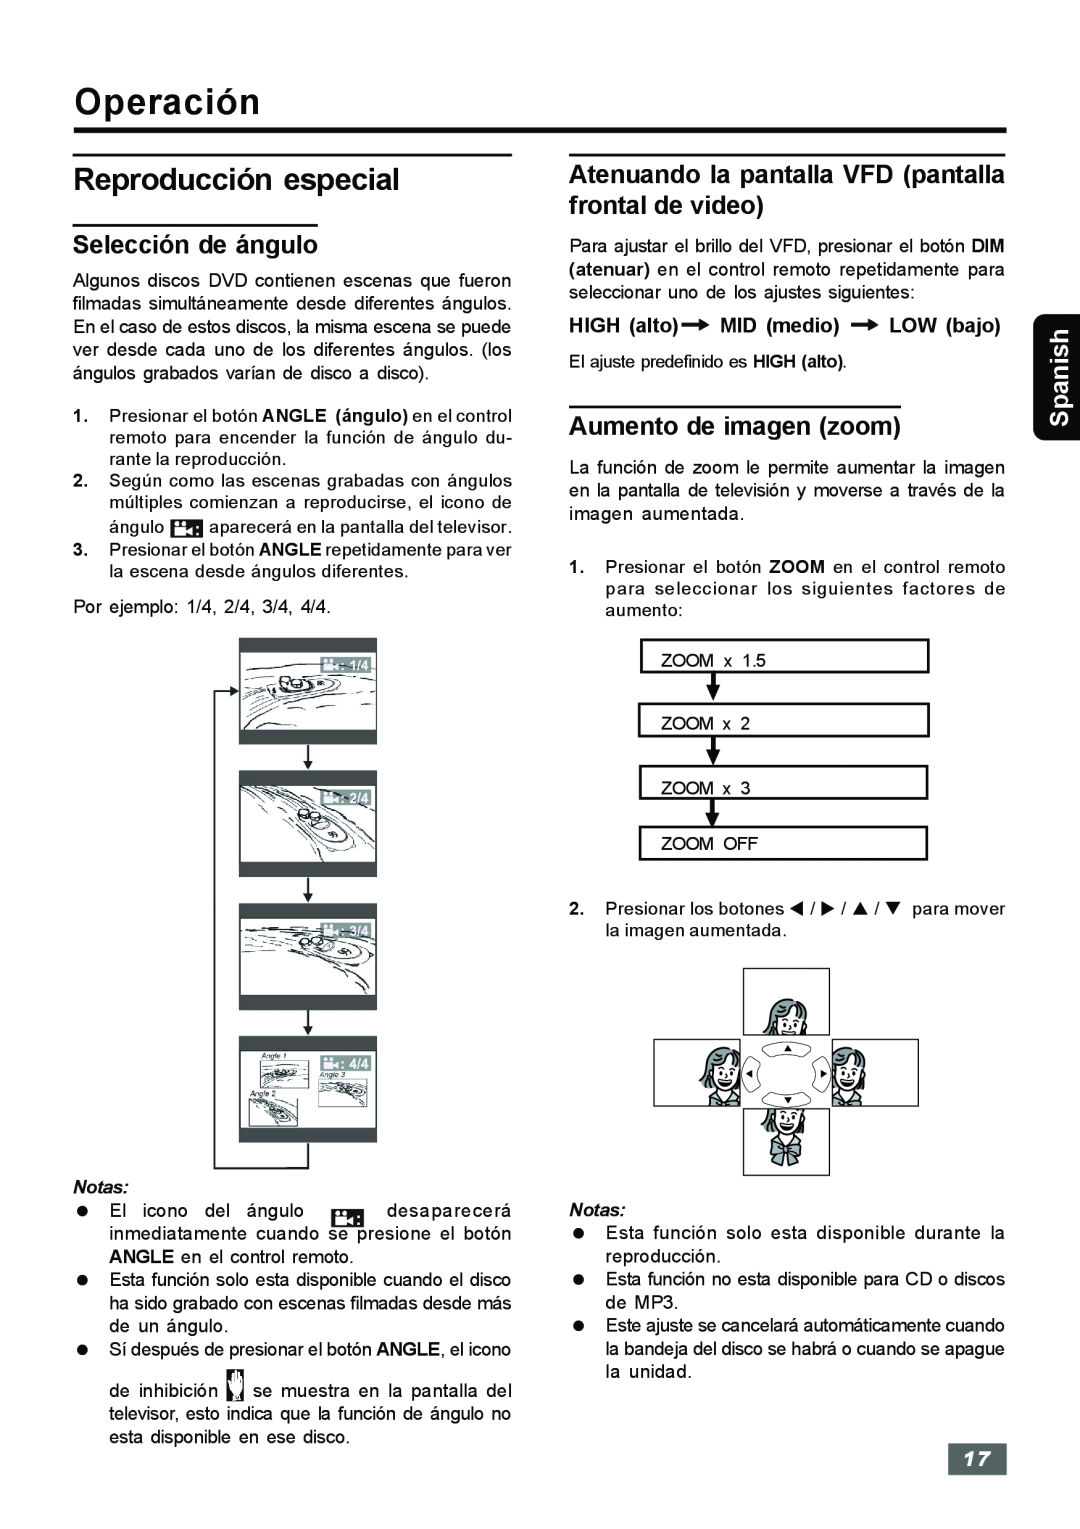 Insignia IS-HTIB102731 owner manual Reproducción especial, Selección de ángulo, Aumento de imagen zoom, Operación, Spanish 